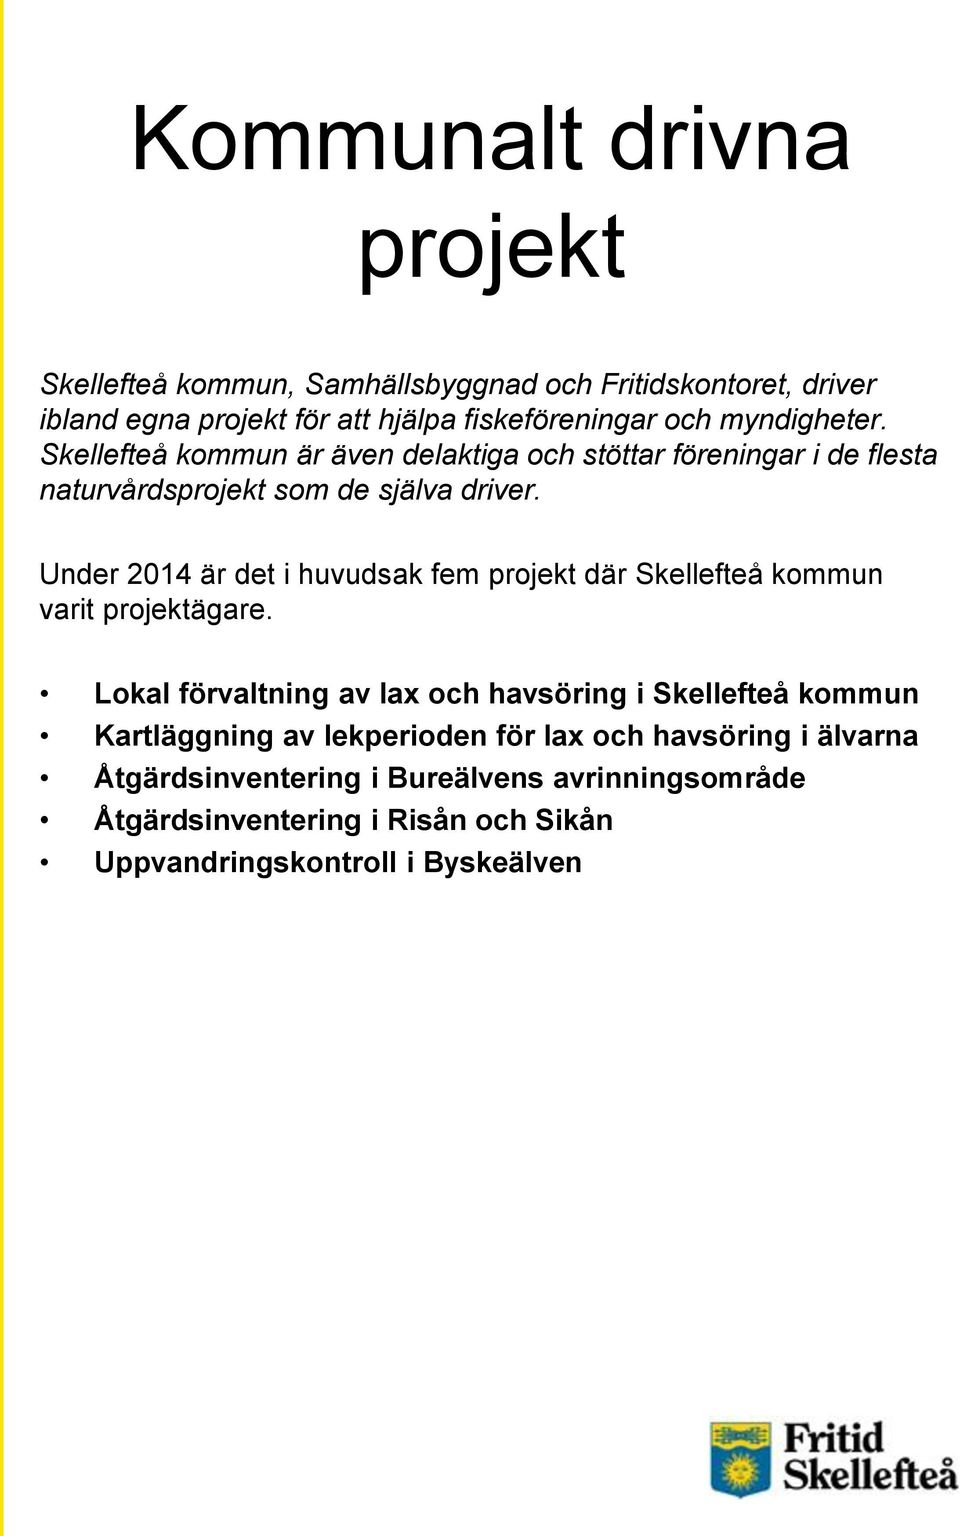 Under 2014 är det i huvudsak fem projekt där Skellefteå kommun varit projektägare.